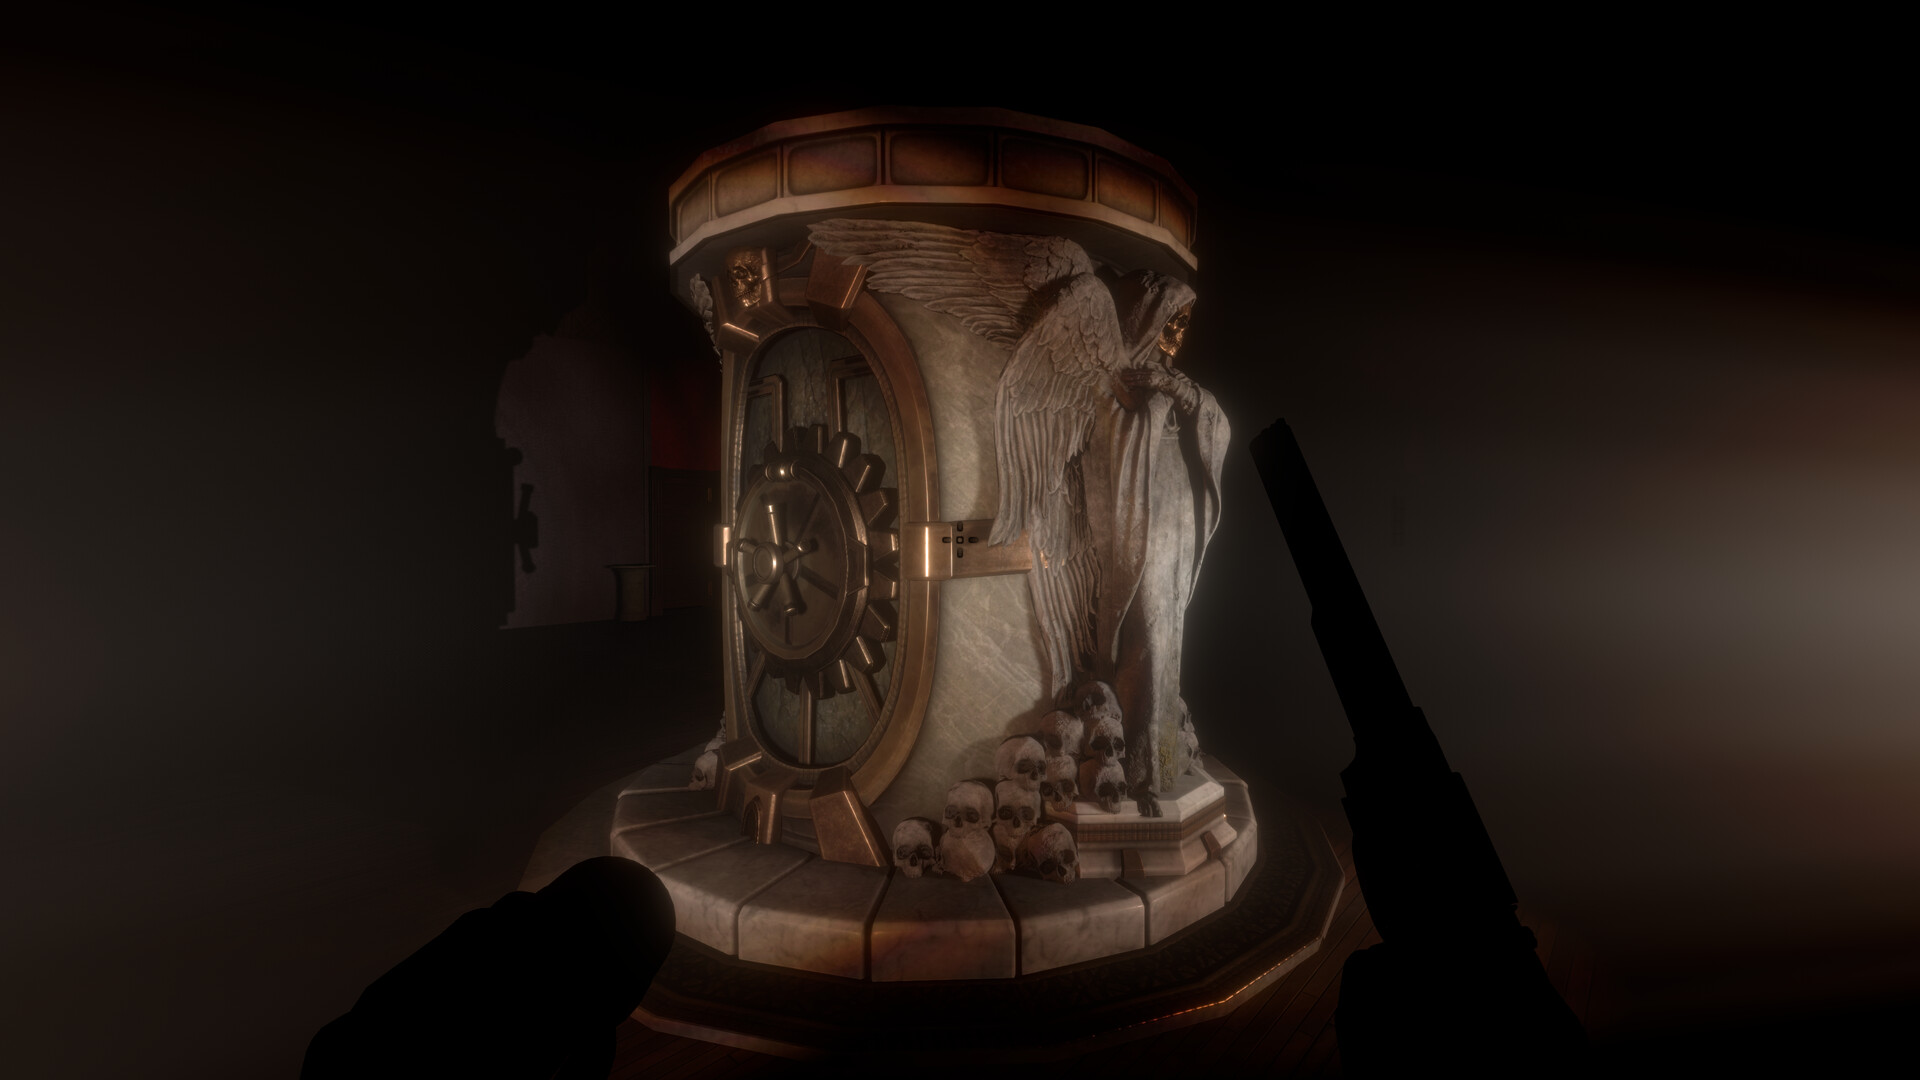 第一人称恐怖对抗游戏《午夜凶杀俱乐部》现已登录Steam平台 2024年第四季度推出